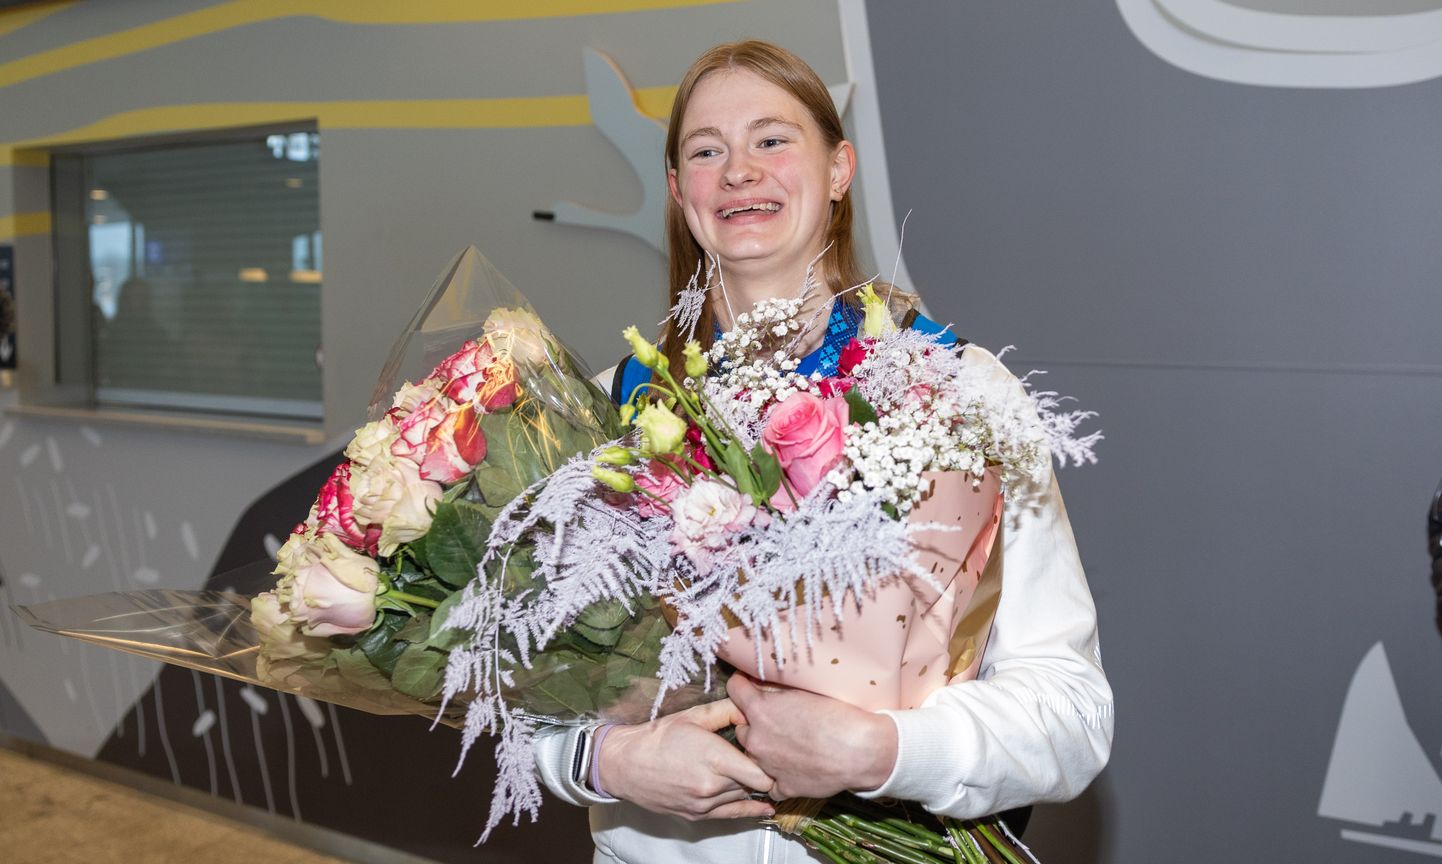 Ujumise lühiraja EMilt kuld- ja hõbemedali võitnud Eneli Jefimovat võeti kodumaal vastu lillesülemite ja kallistustega.